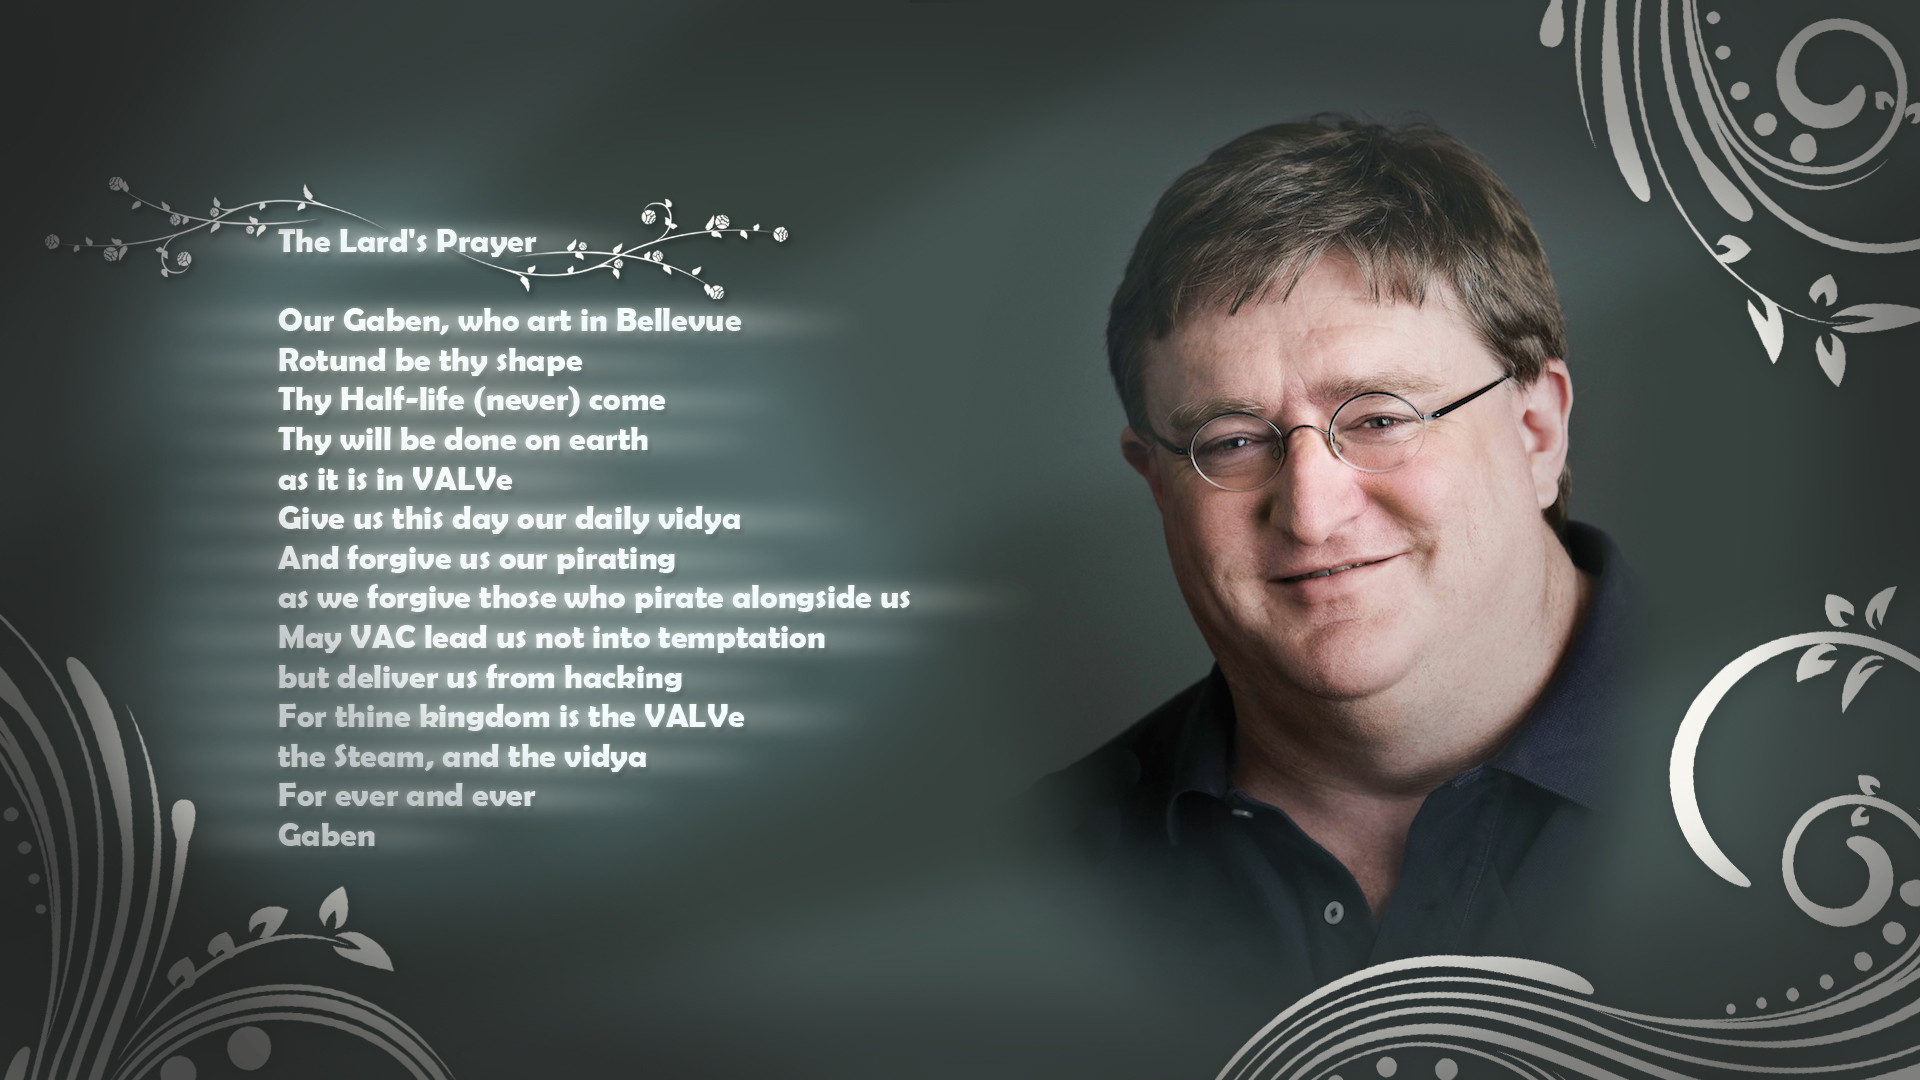 Gabe Newell The Lard's Prayer Prayer text humor wallpaper |  | 73746 | WallpaperUP